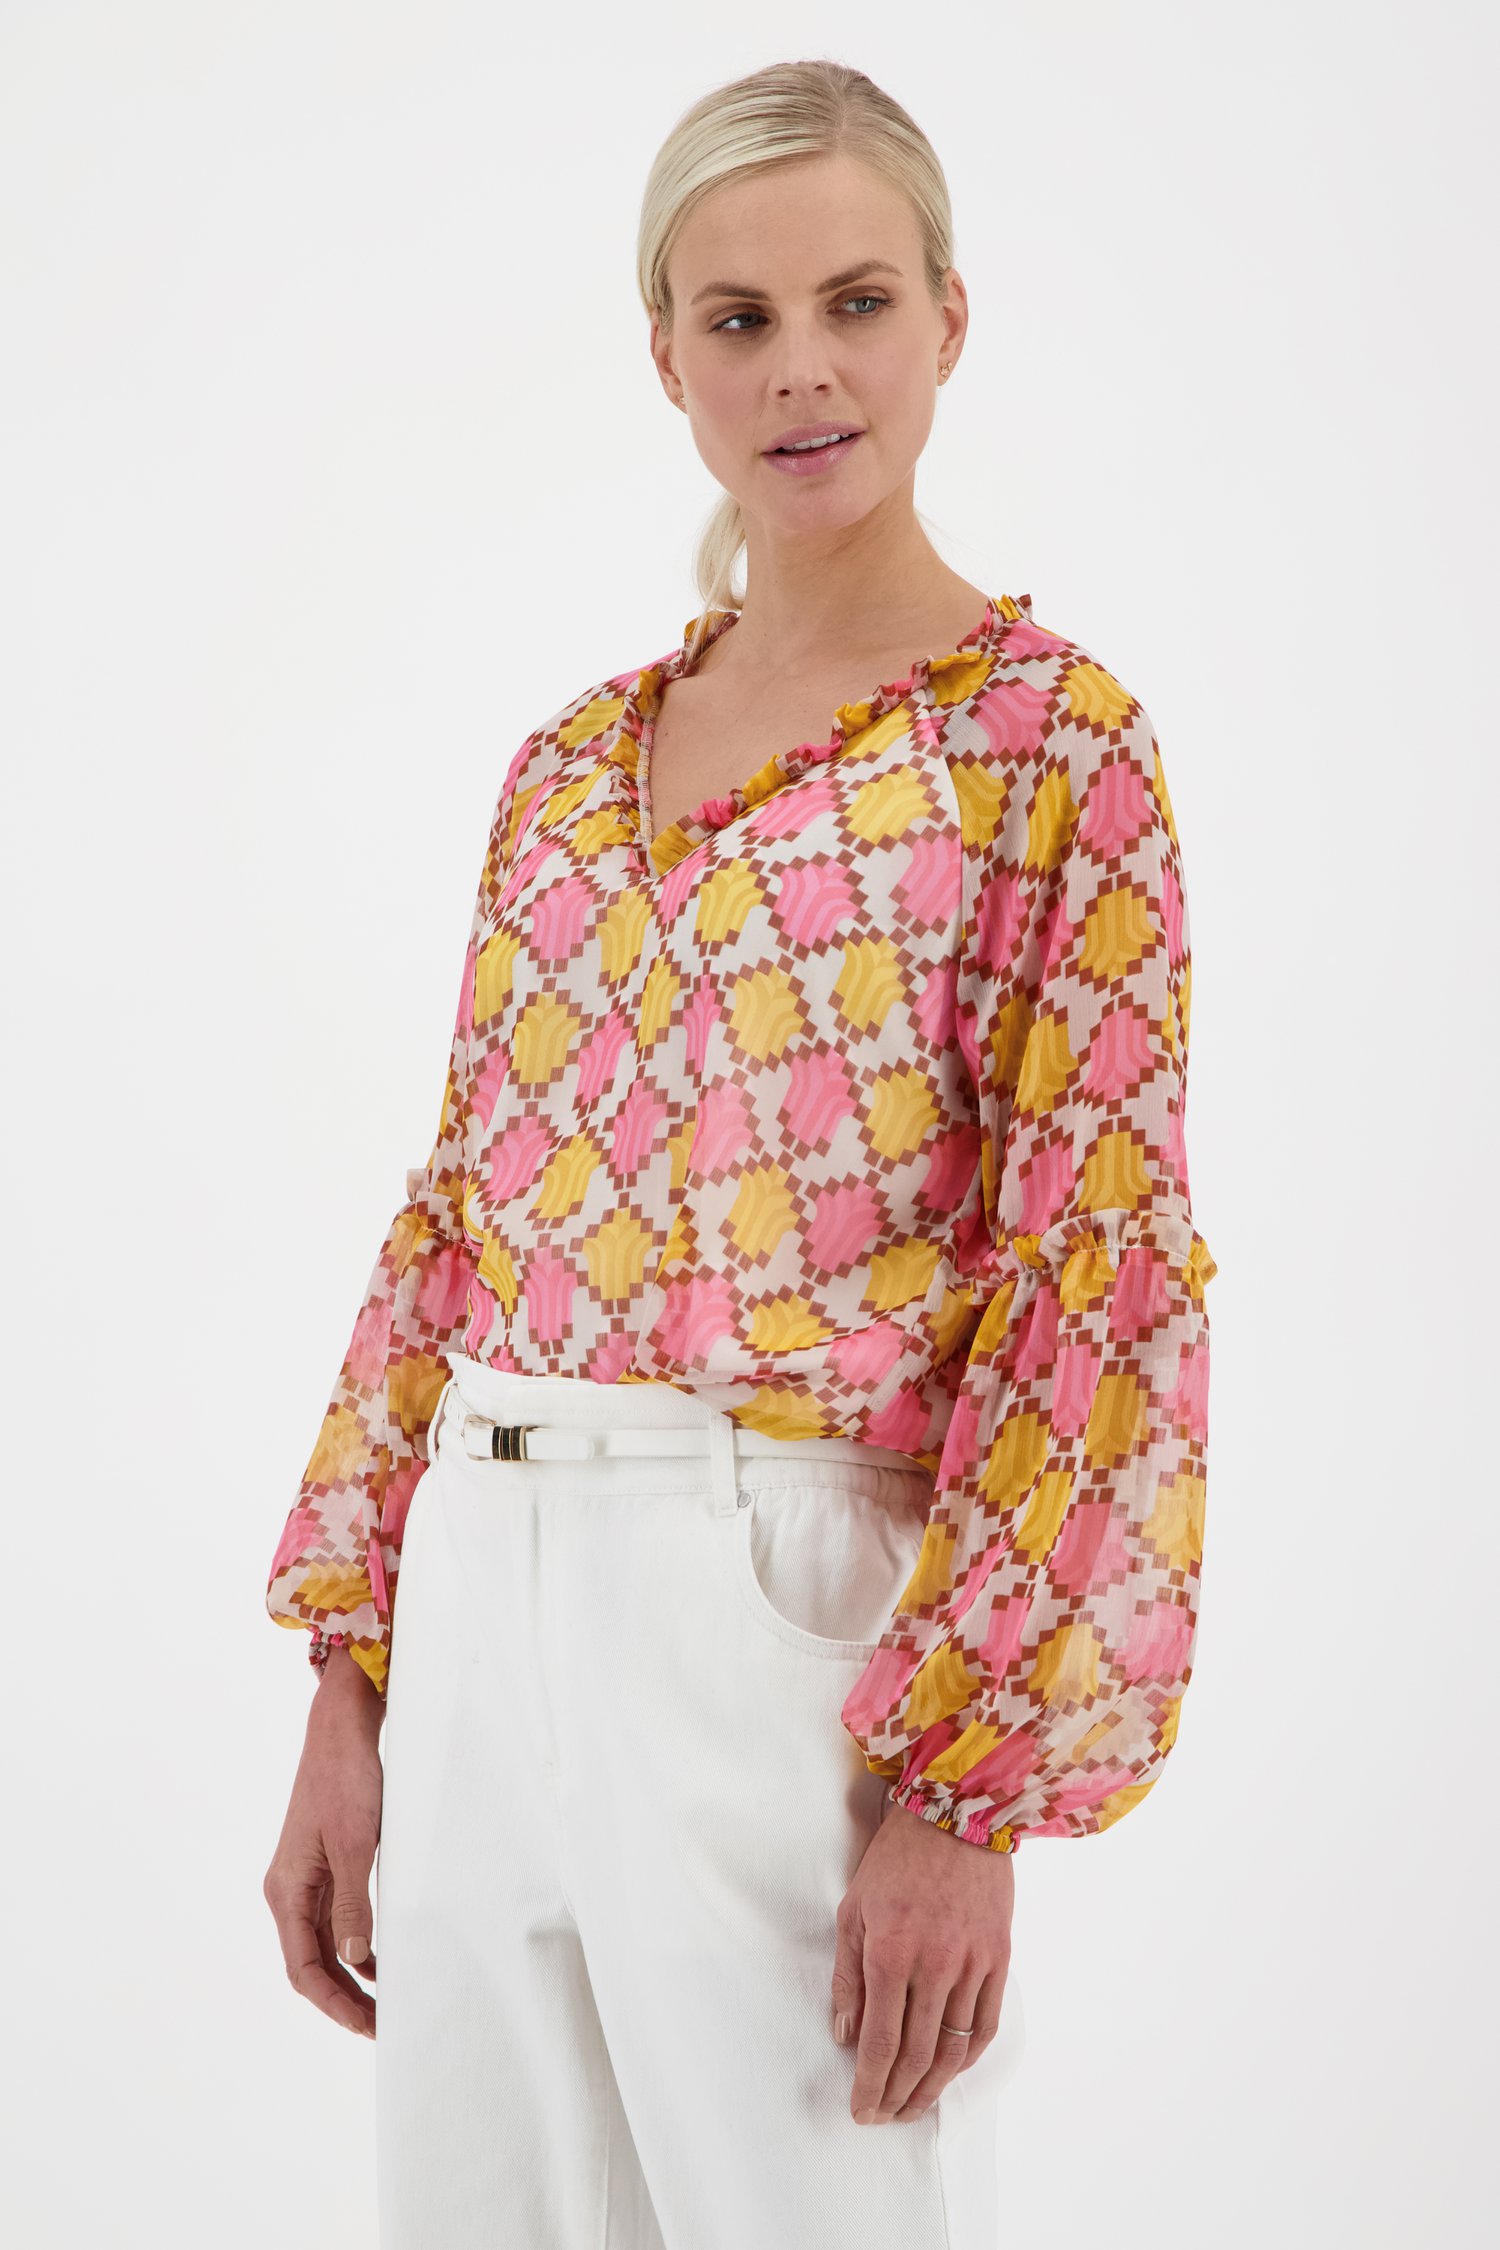 Leeg de prullenbak Alexander Graham Bell Samengroeiing Luchtige blouse met kleurrijke print van JDY | 9773152 | e5